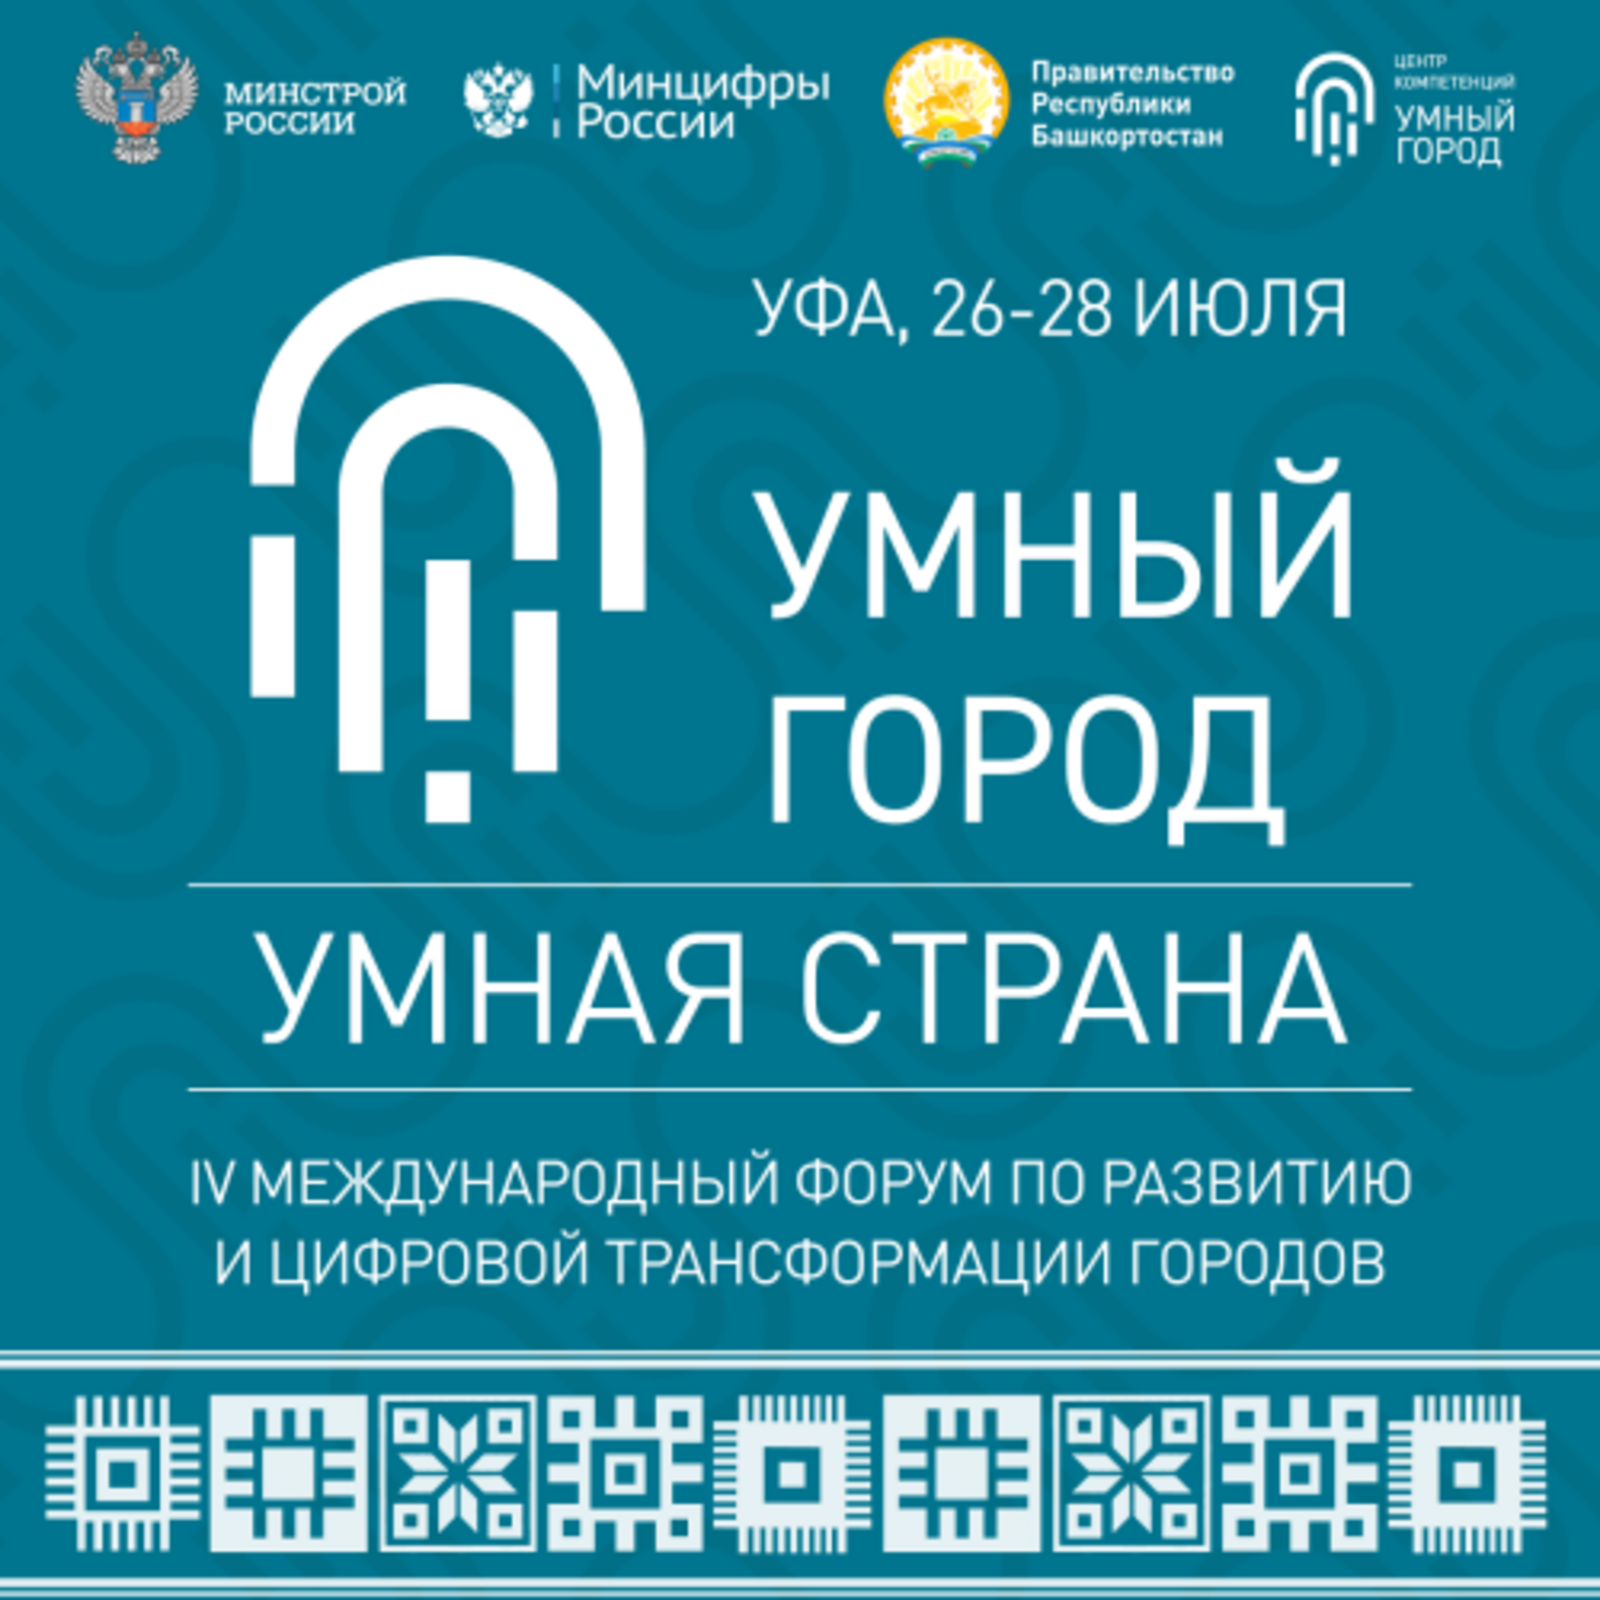 «Умный город – Умная страна»: Башкирия представит свои наработки в сфере цифровых технологий городского хозяйства